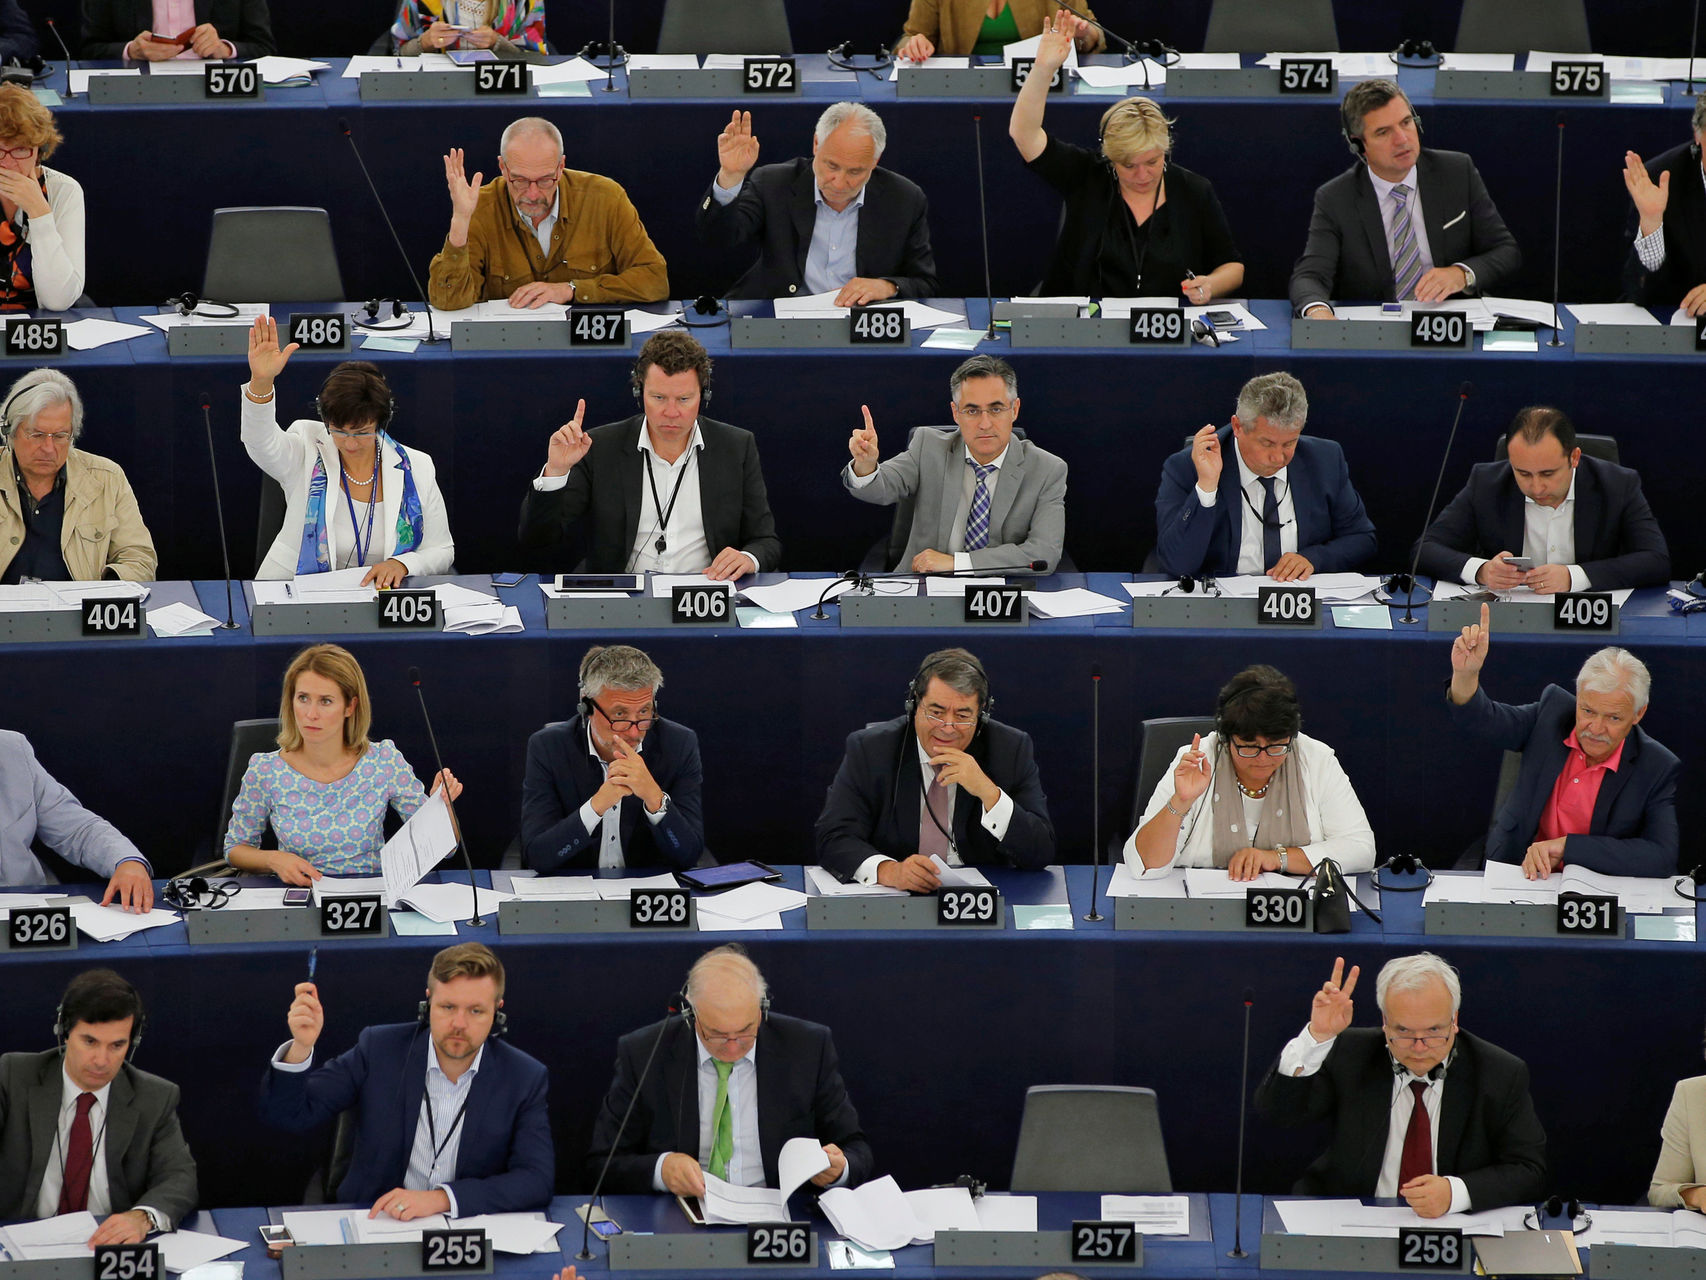 Eurodiputados advierten que no reconocerán una asamblea constituyente ilegal